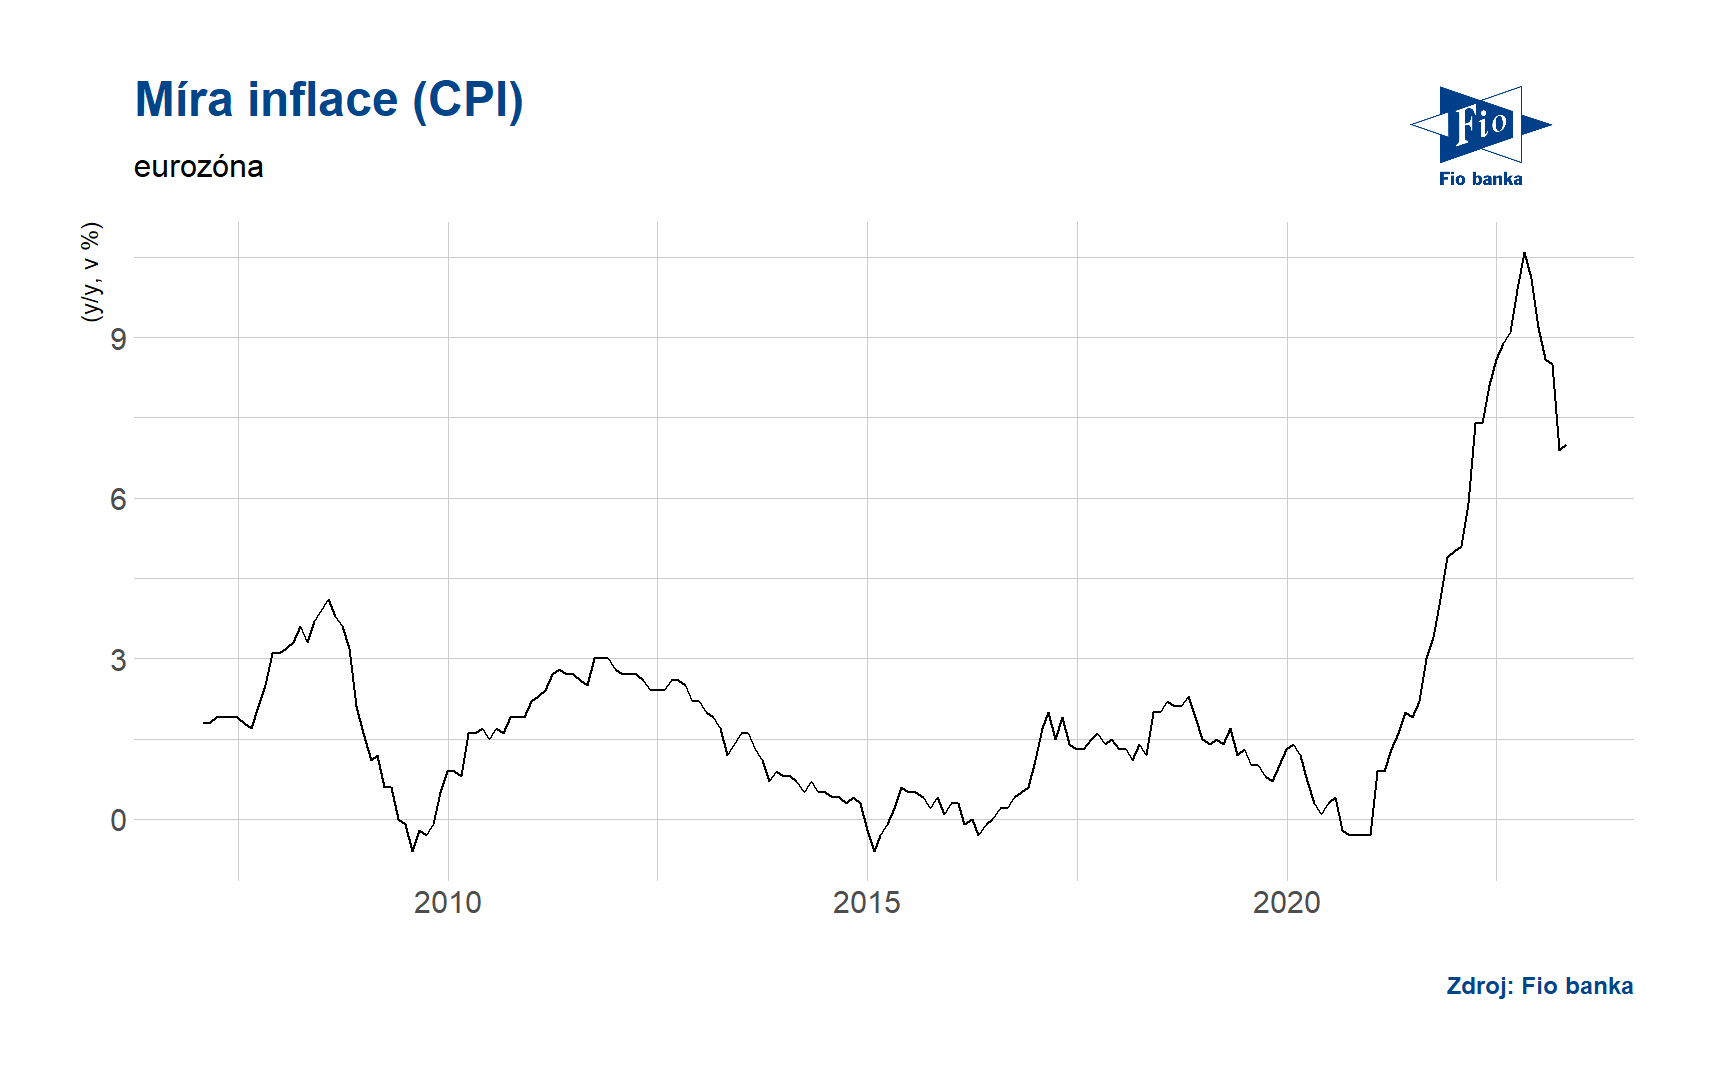 Míra inflace dle CPI - eurozóna